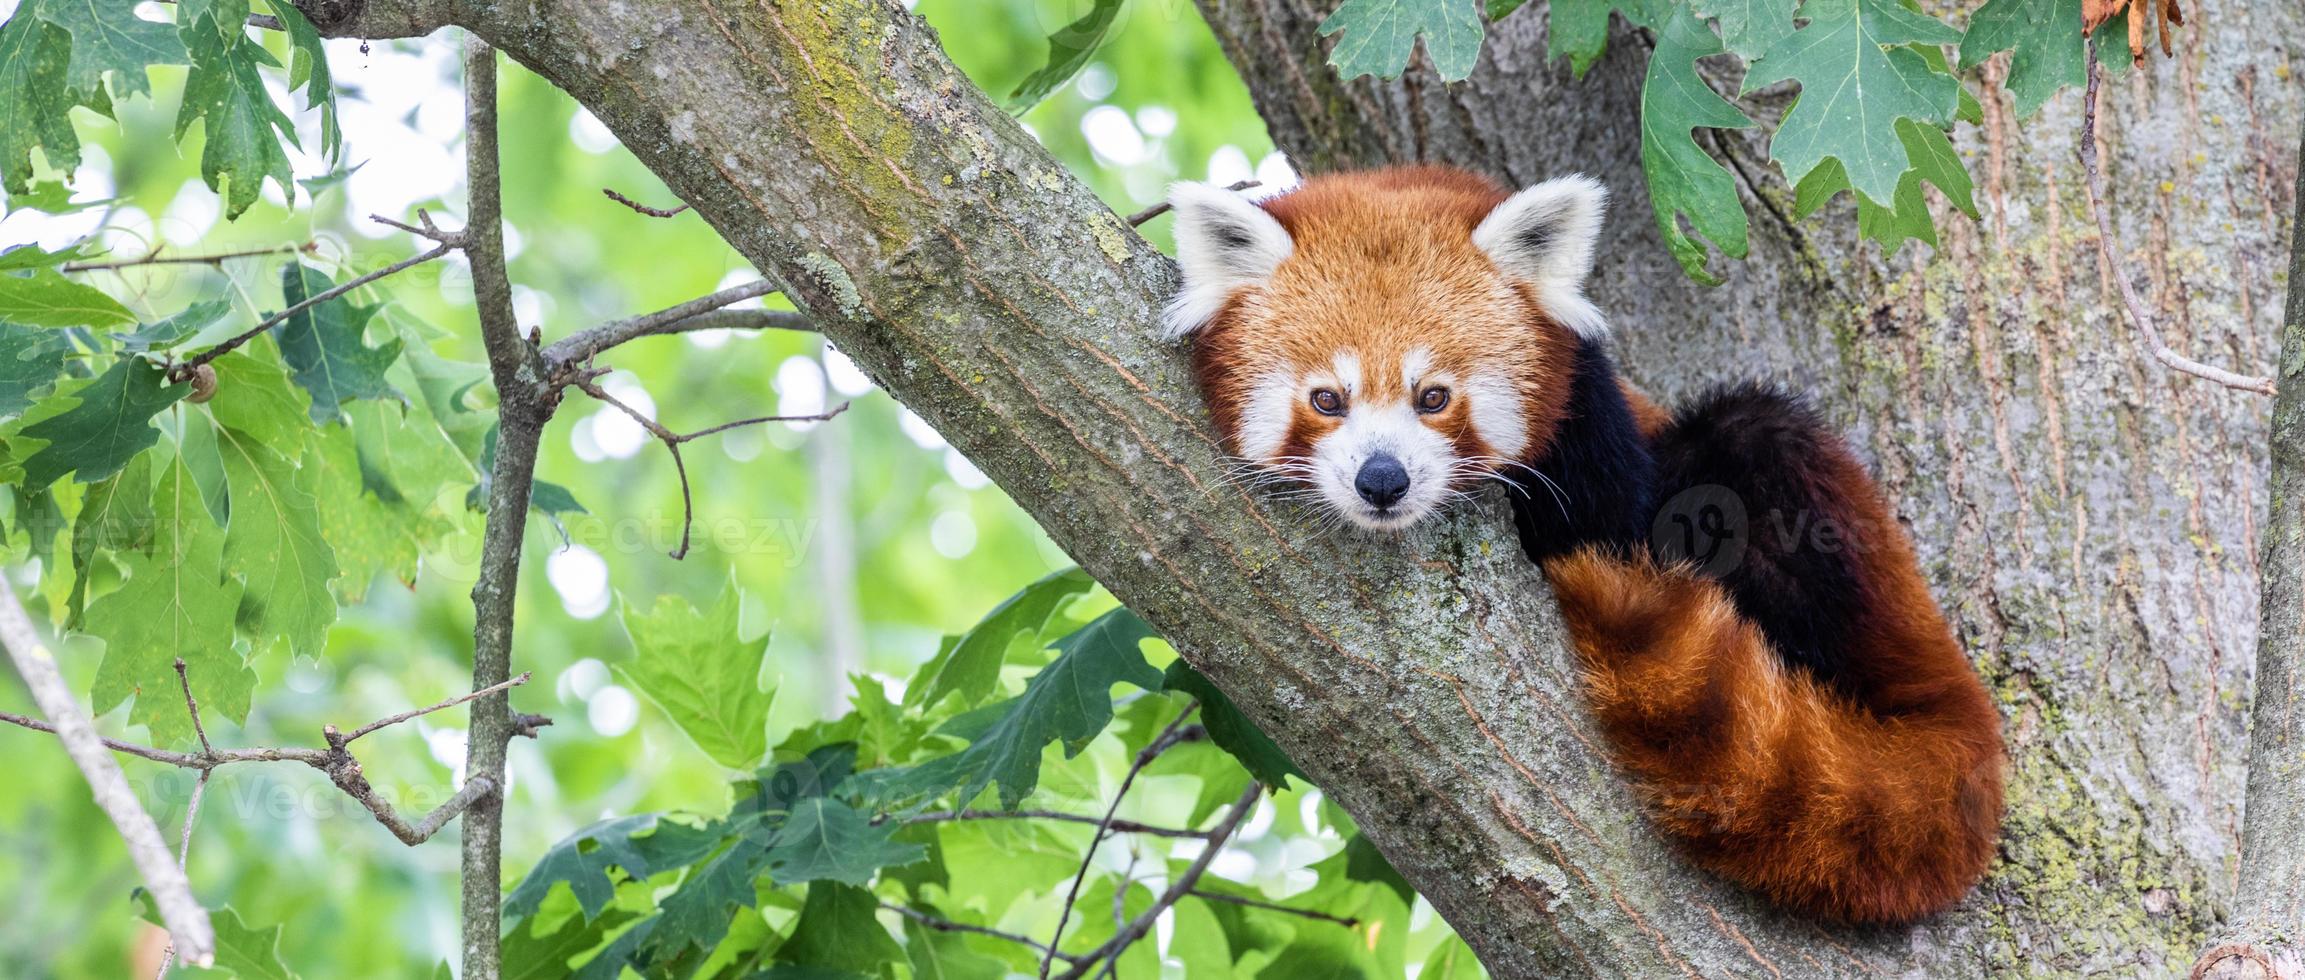 panda roux - ailurus fulgens - portrait. animal mignon reposant paresseux sur un arbre. photo